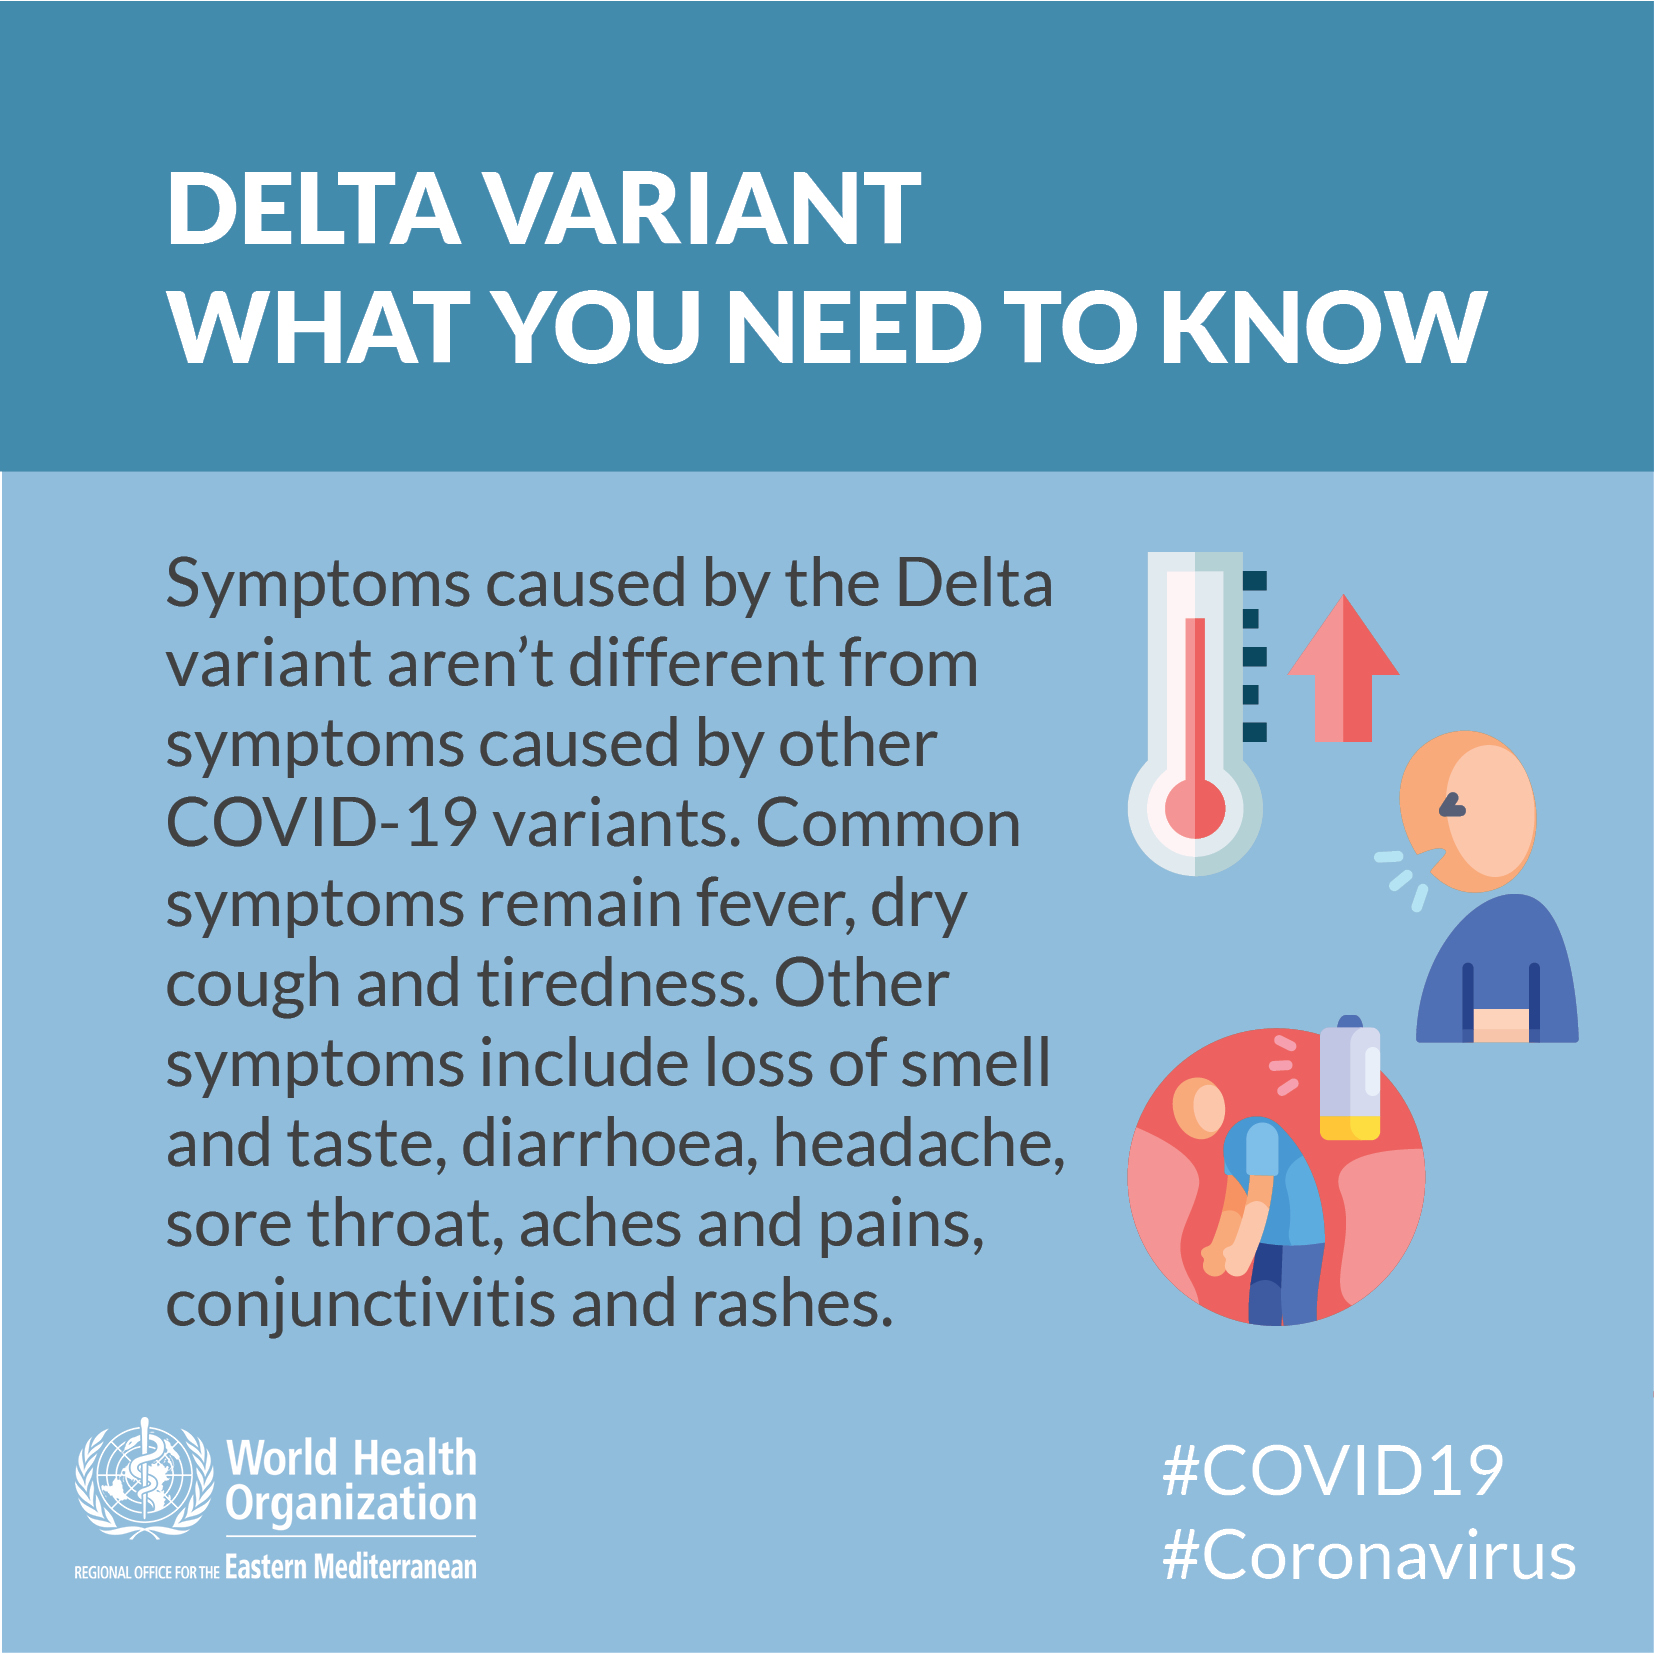 Covid variant of delta symptoms 19 The Delta